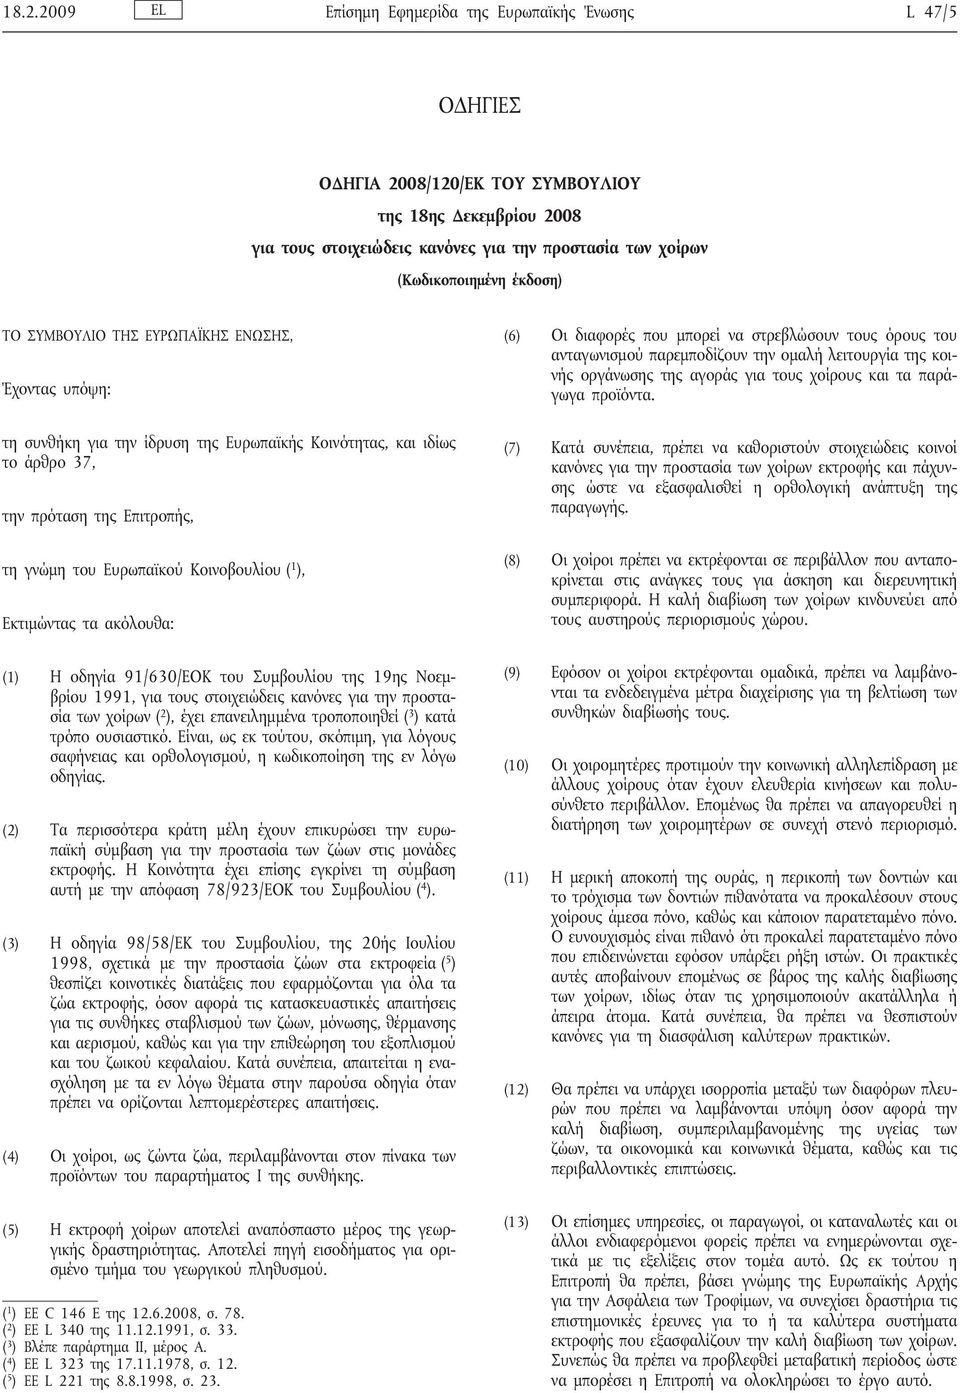 ( 1 ), Εκτιμώντας τα ακόλουθα: (1) Η οδηγία 91/630/ΕΟΚ του Συμβουλίου της 19ης Νοεμβρίου 1991, για τους στοιχειώδεις κανόνες για την προστασία των χοίρων ( 2 ), έχει επανειλημμένα τροποποιηθεί ( 3 )